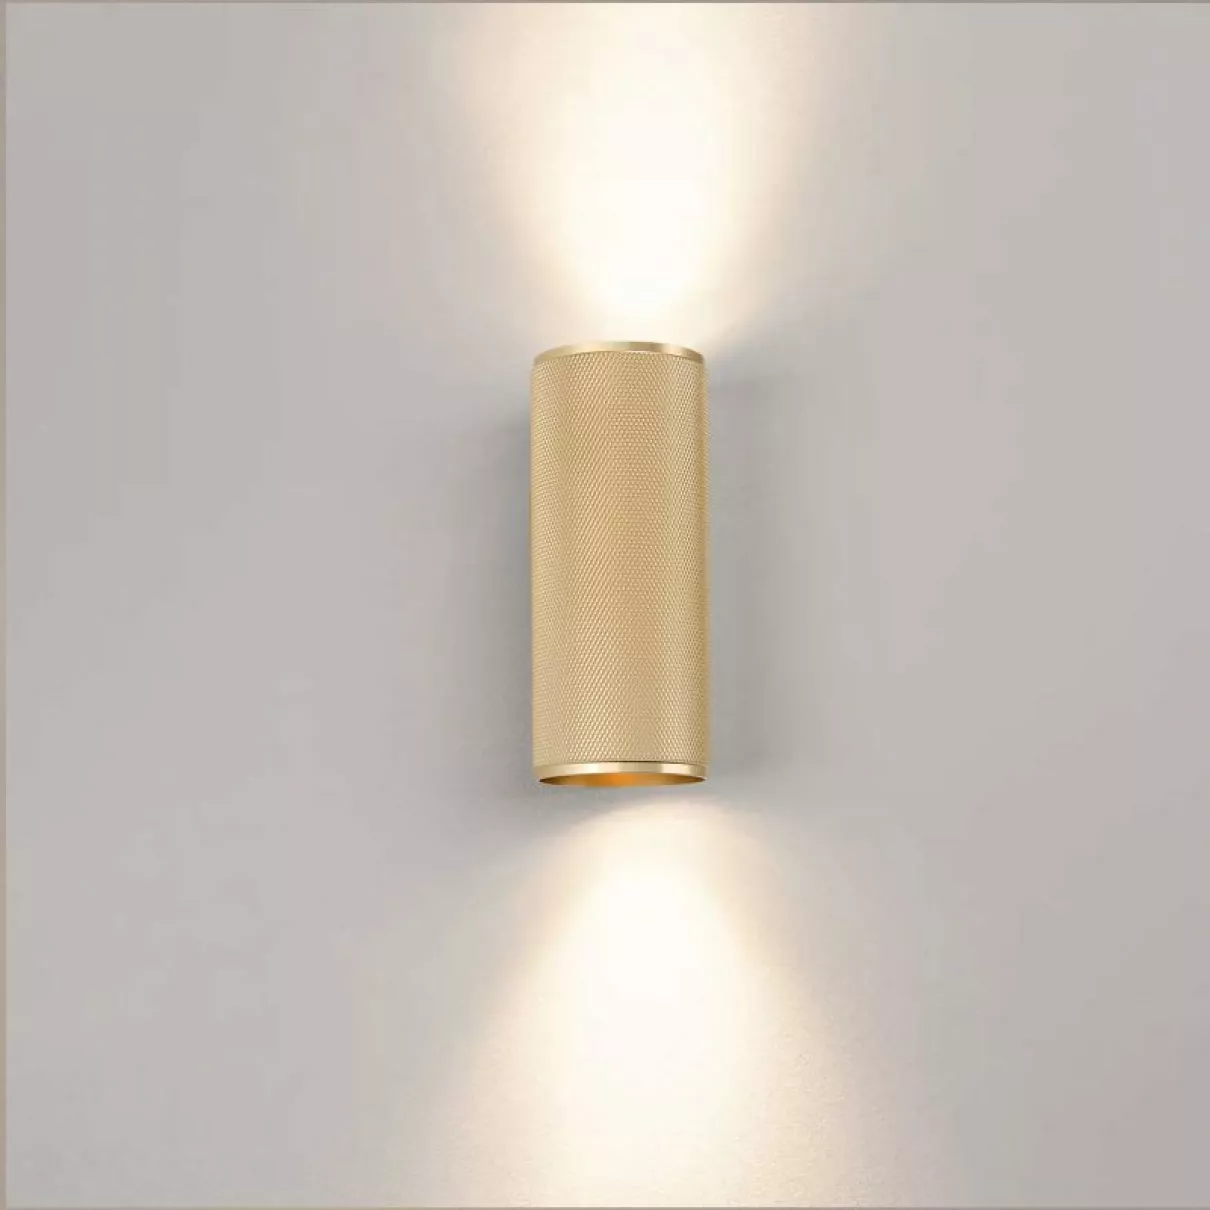 MARTY LED fali lámpa 2 izzós, 2xGU10, matt arany, le-fel világít -  Brilliant-G99206/86